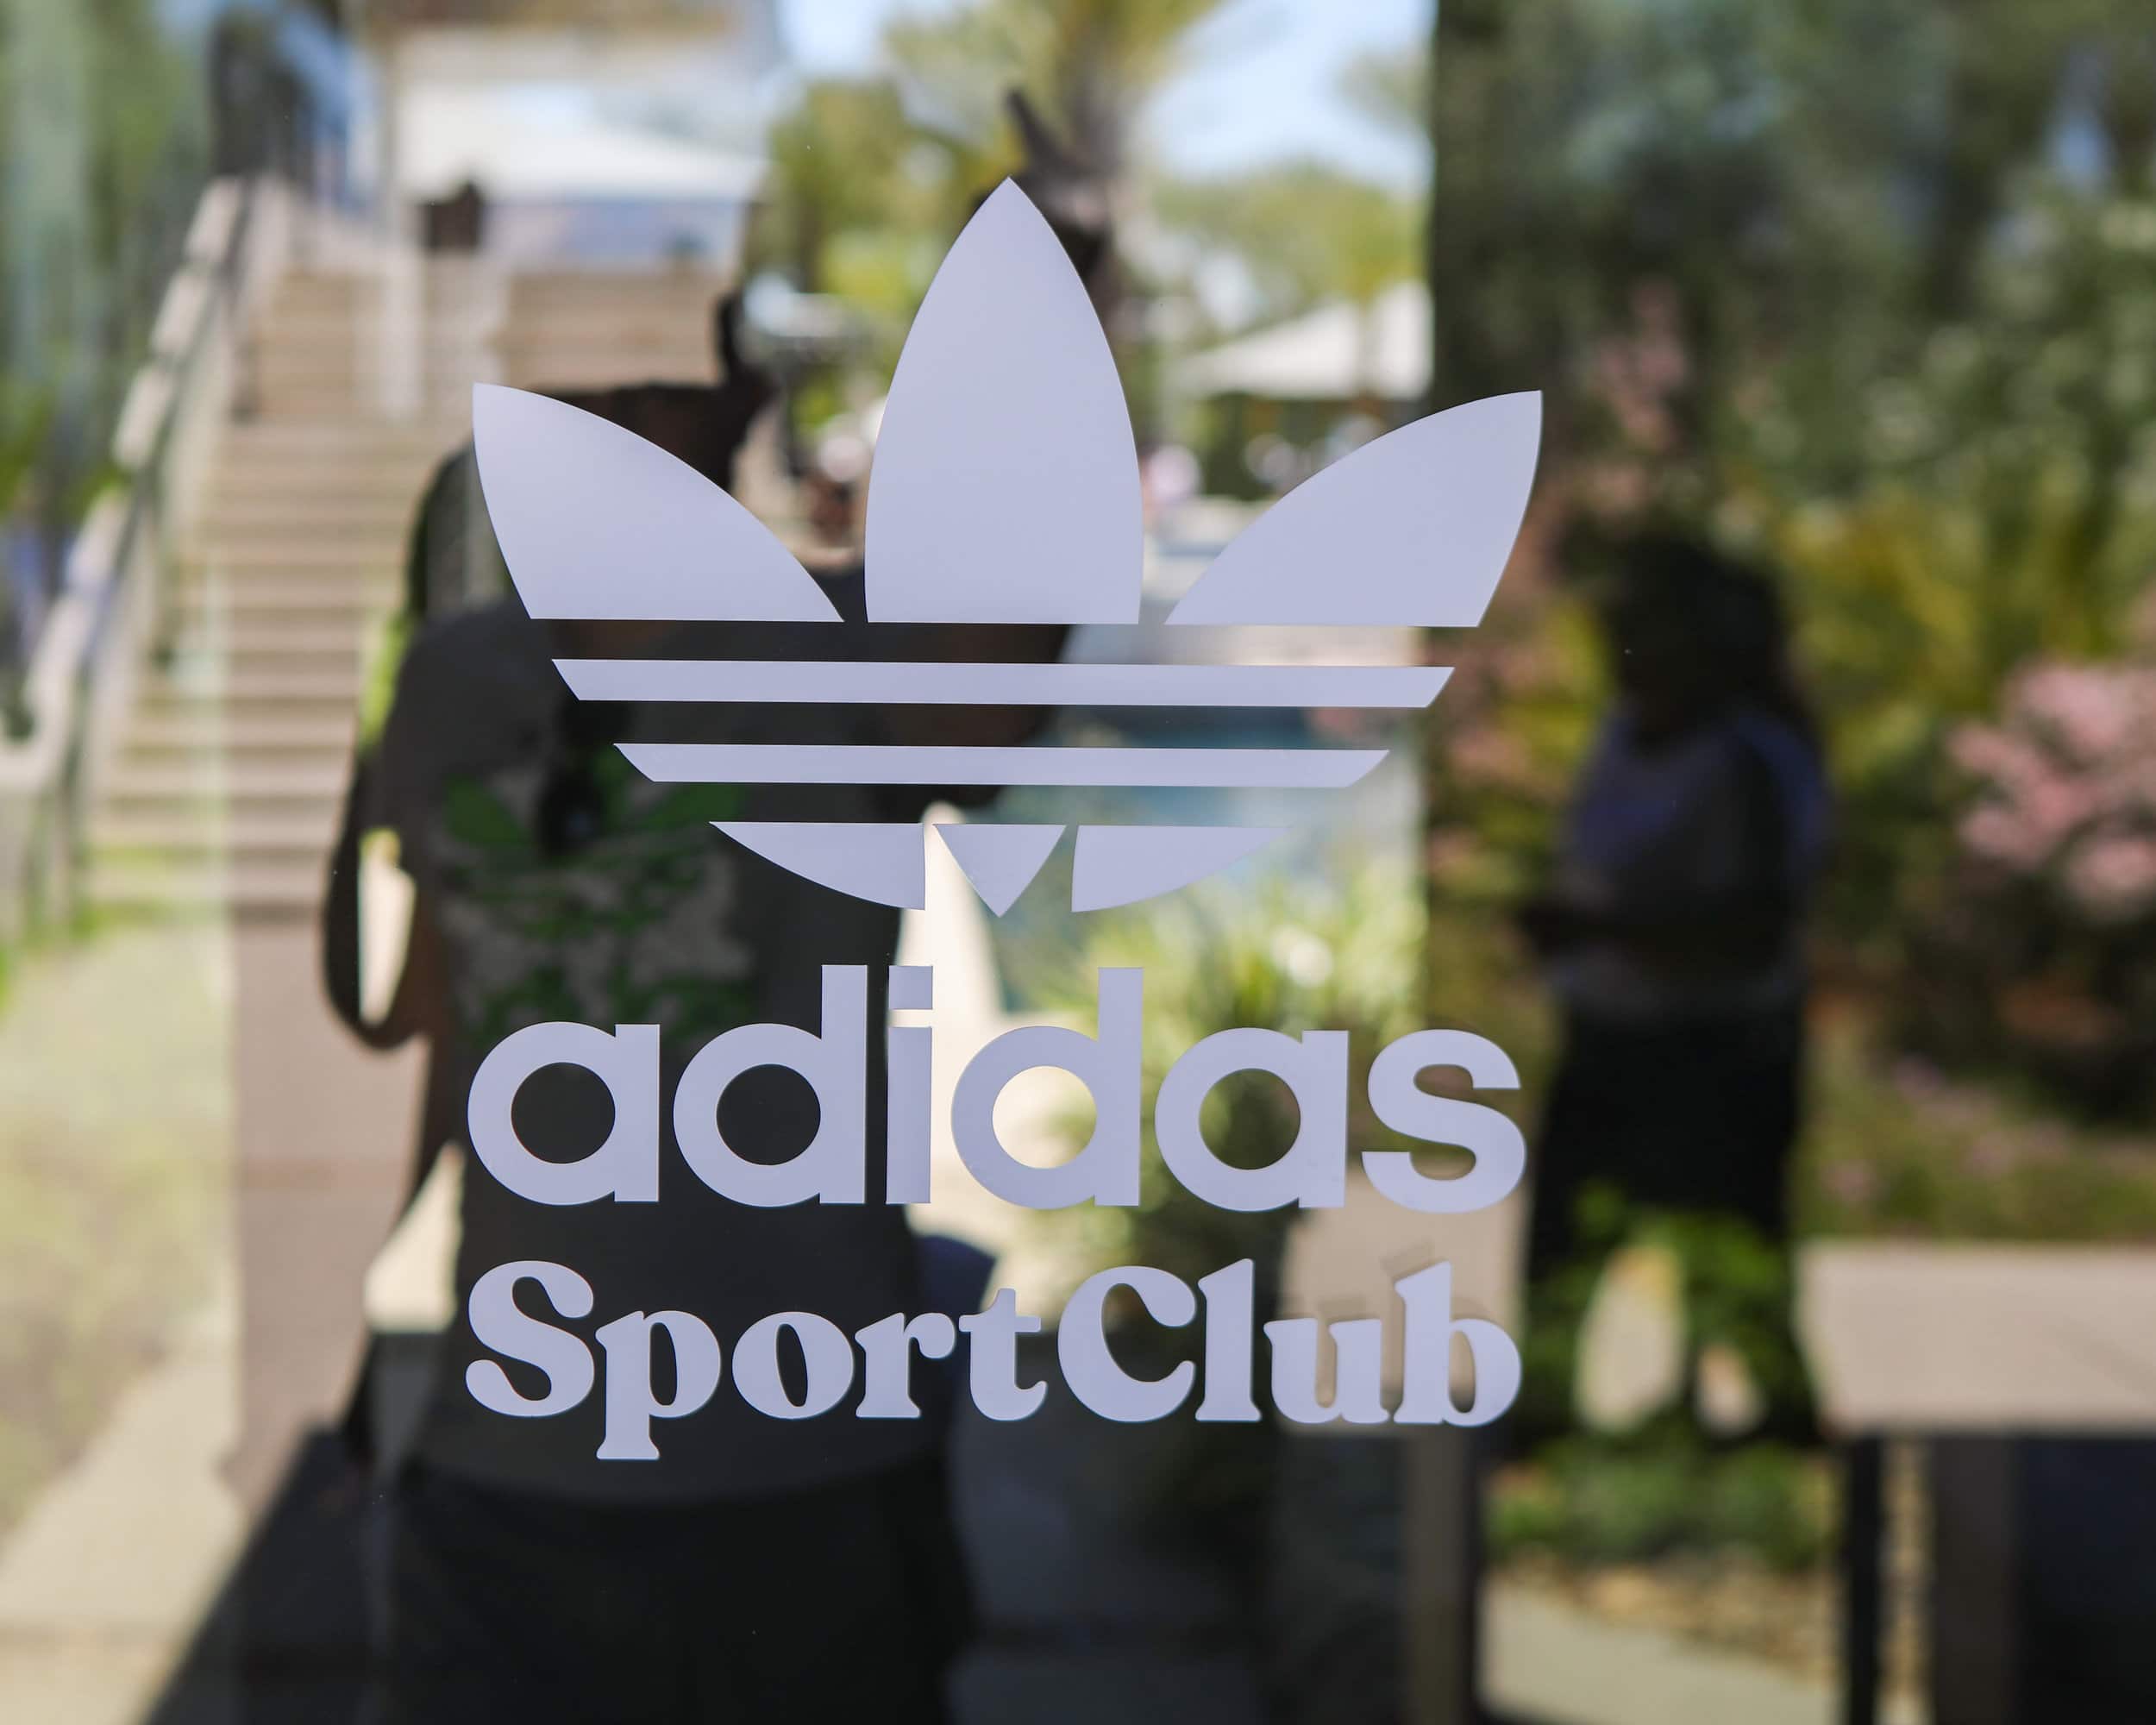 Adidas Originals Draws Thousands To Sport Club